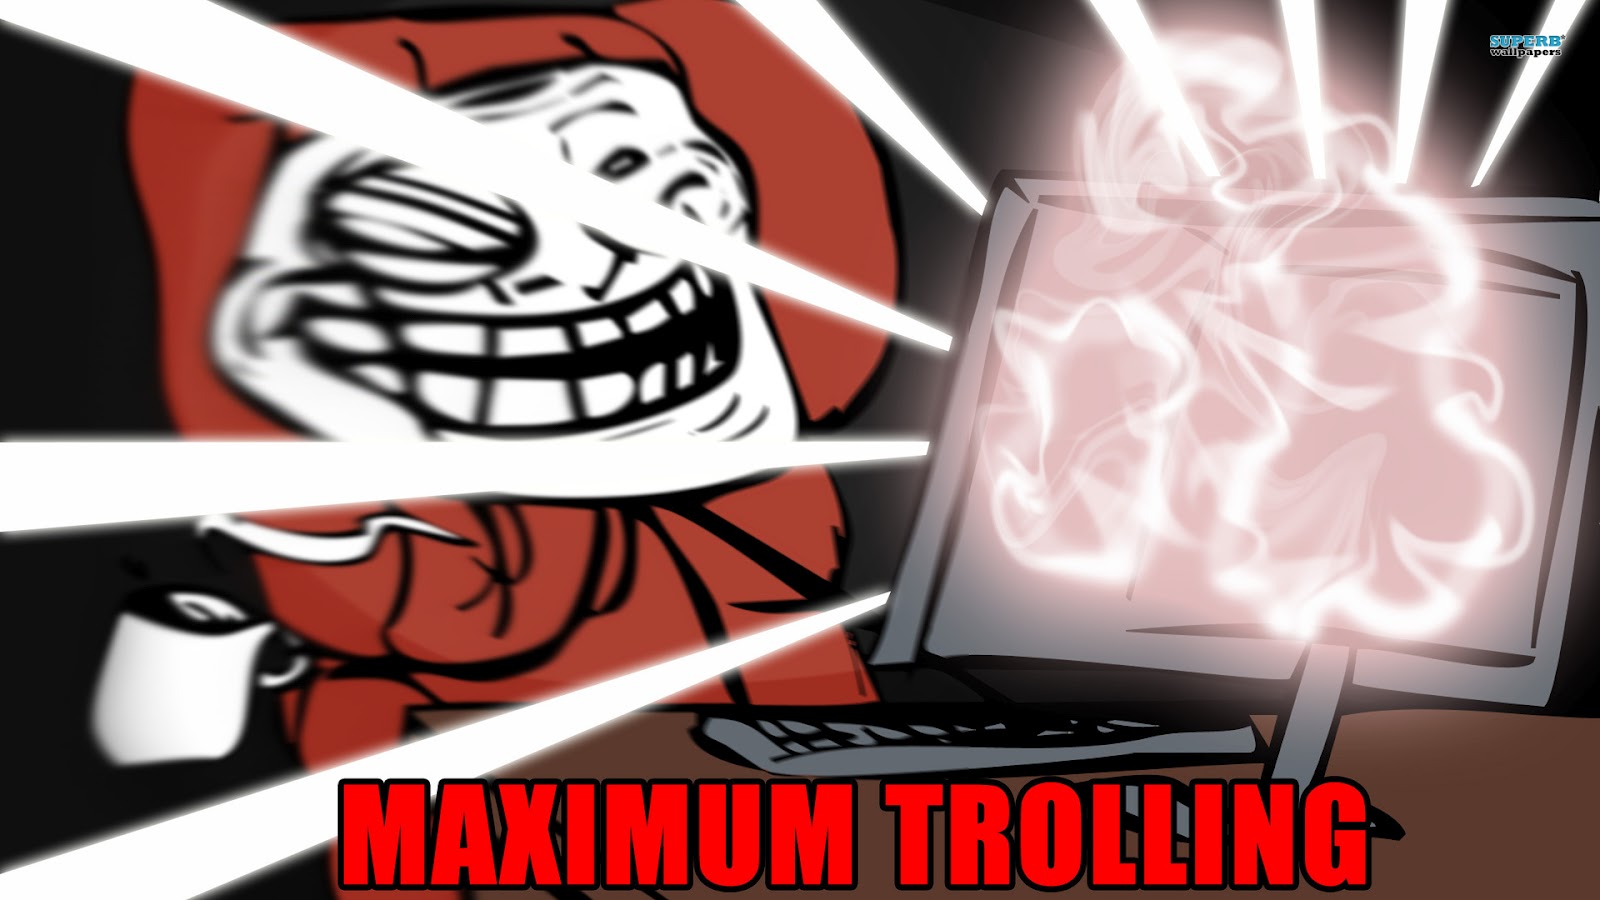 Maximum Trolling Wallpaper Troll Face Descargar En HD